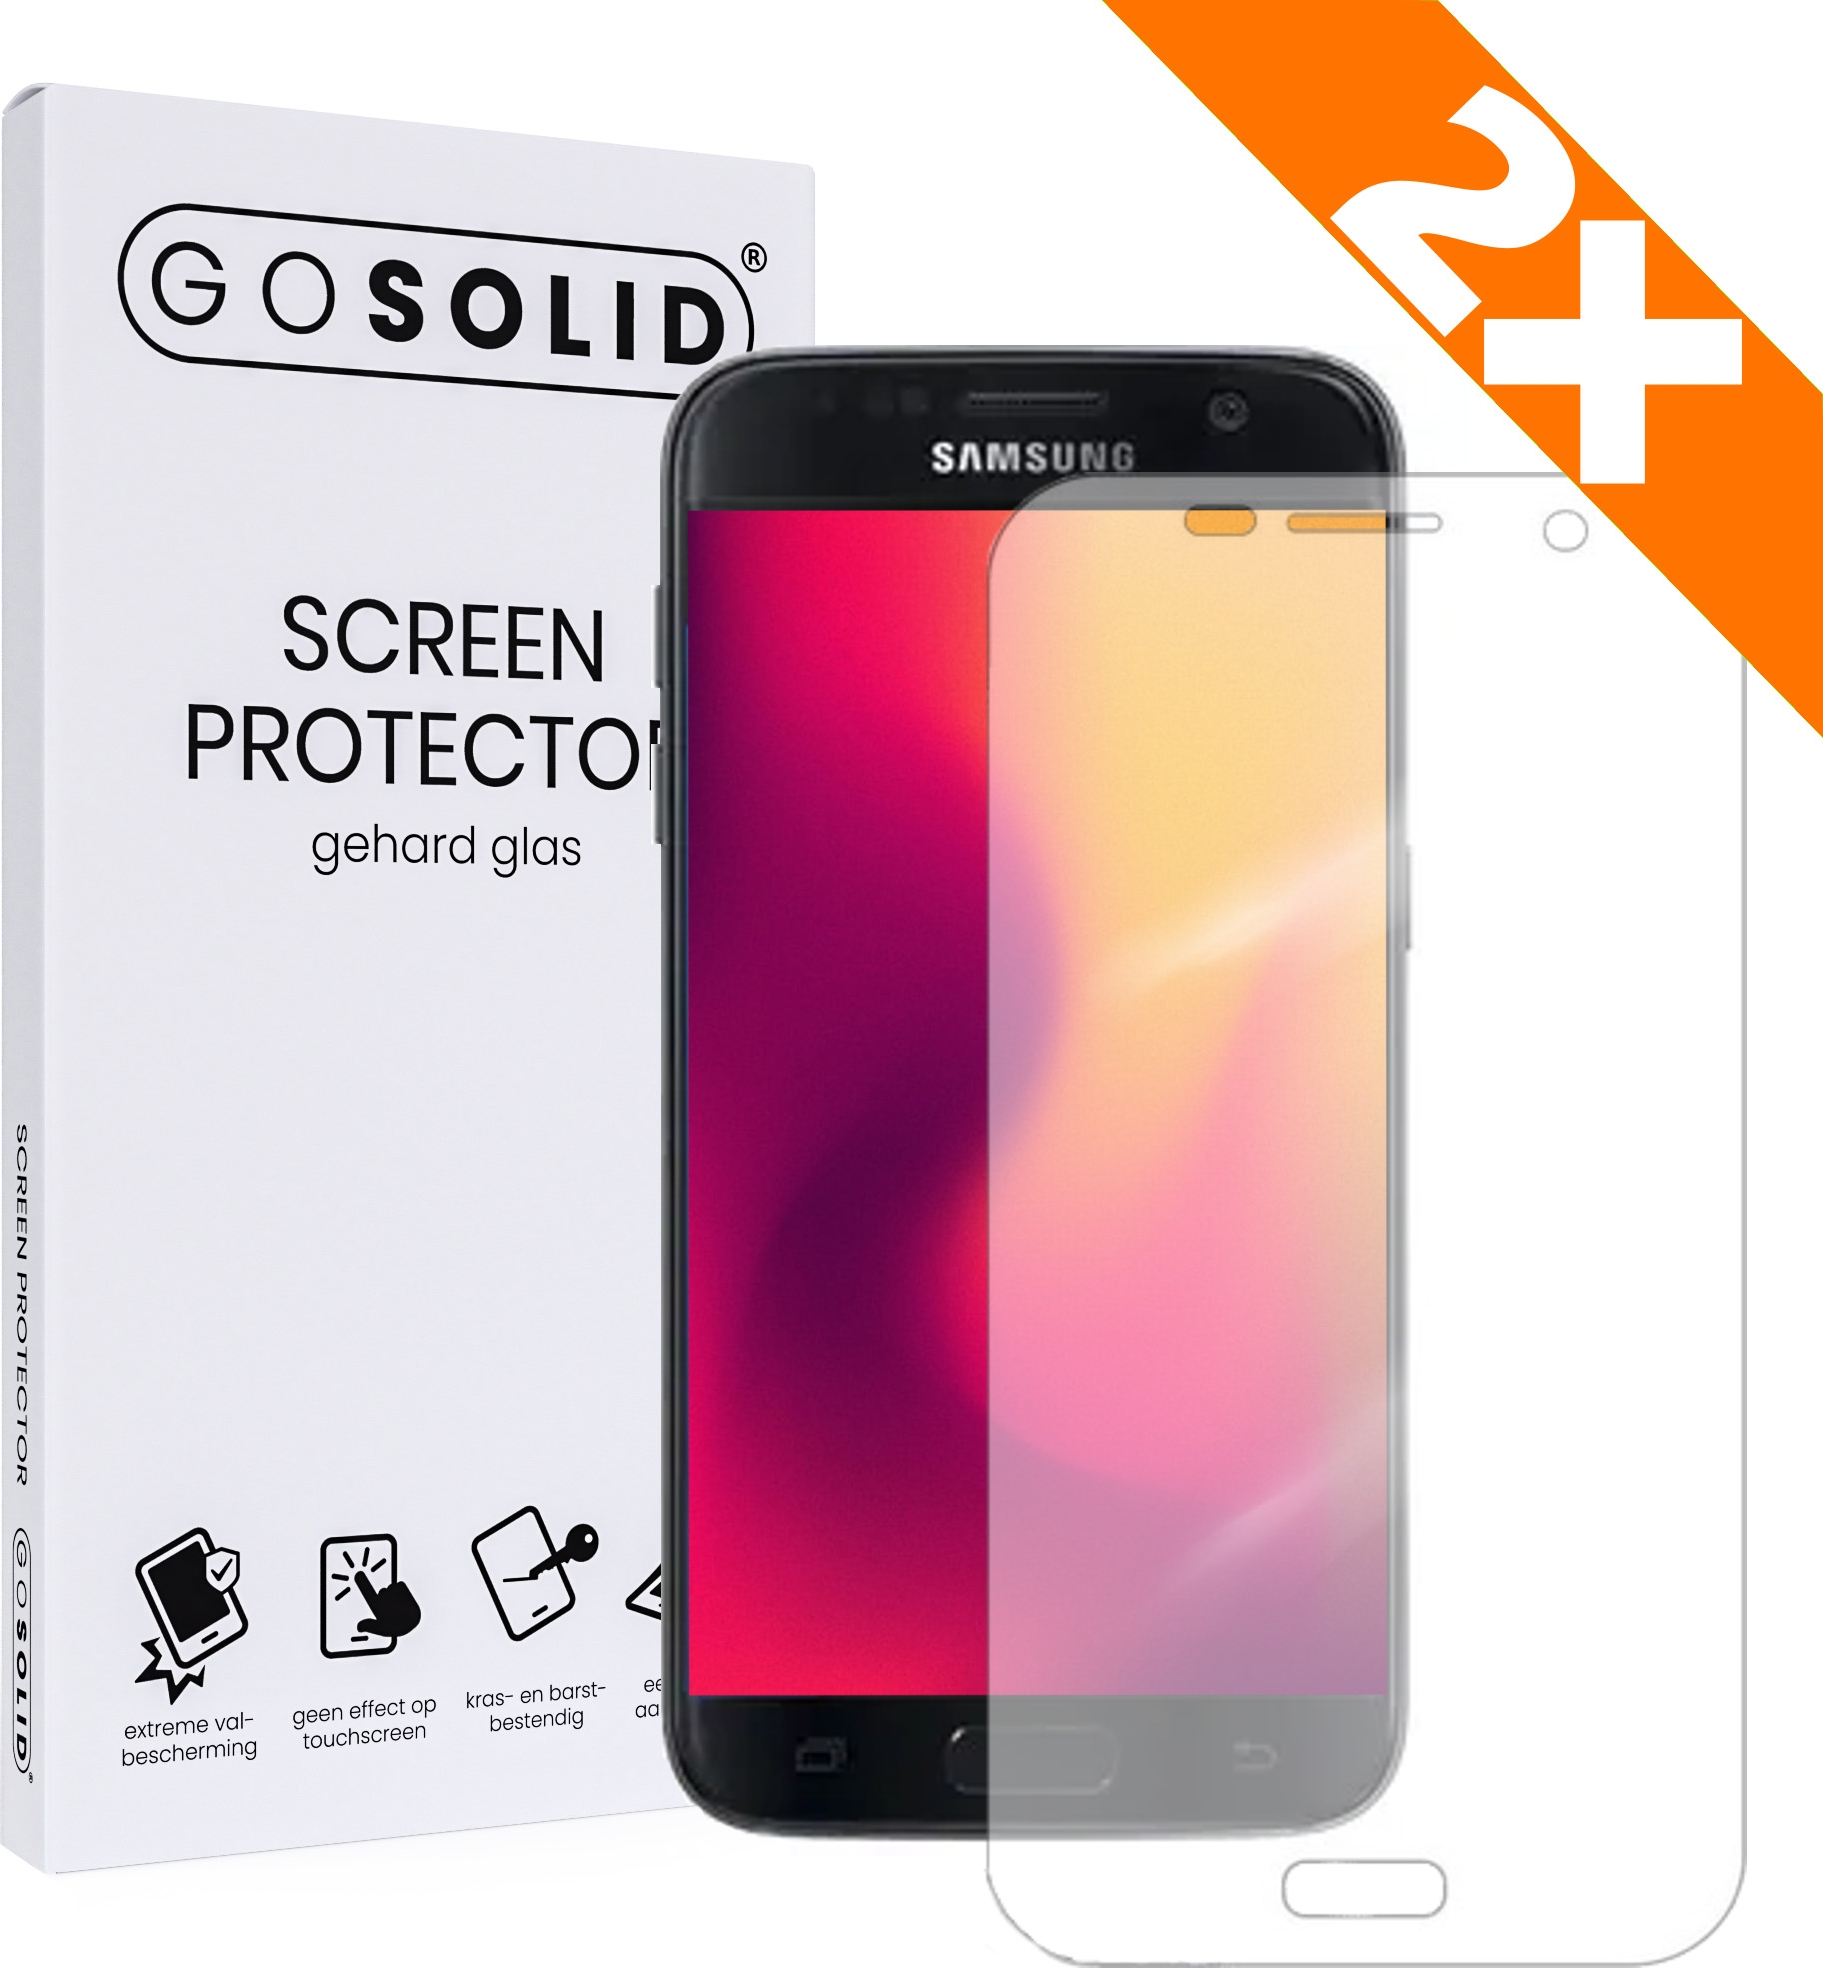 Interpretatie Uitleg modus ᐅ • GO SOLID! Screenprotector voor Samsung Galaxy S6 Edge Plus - Duopack |  Eenvoudig bij ScreenProtectors.nl